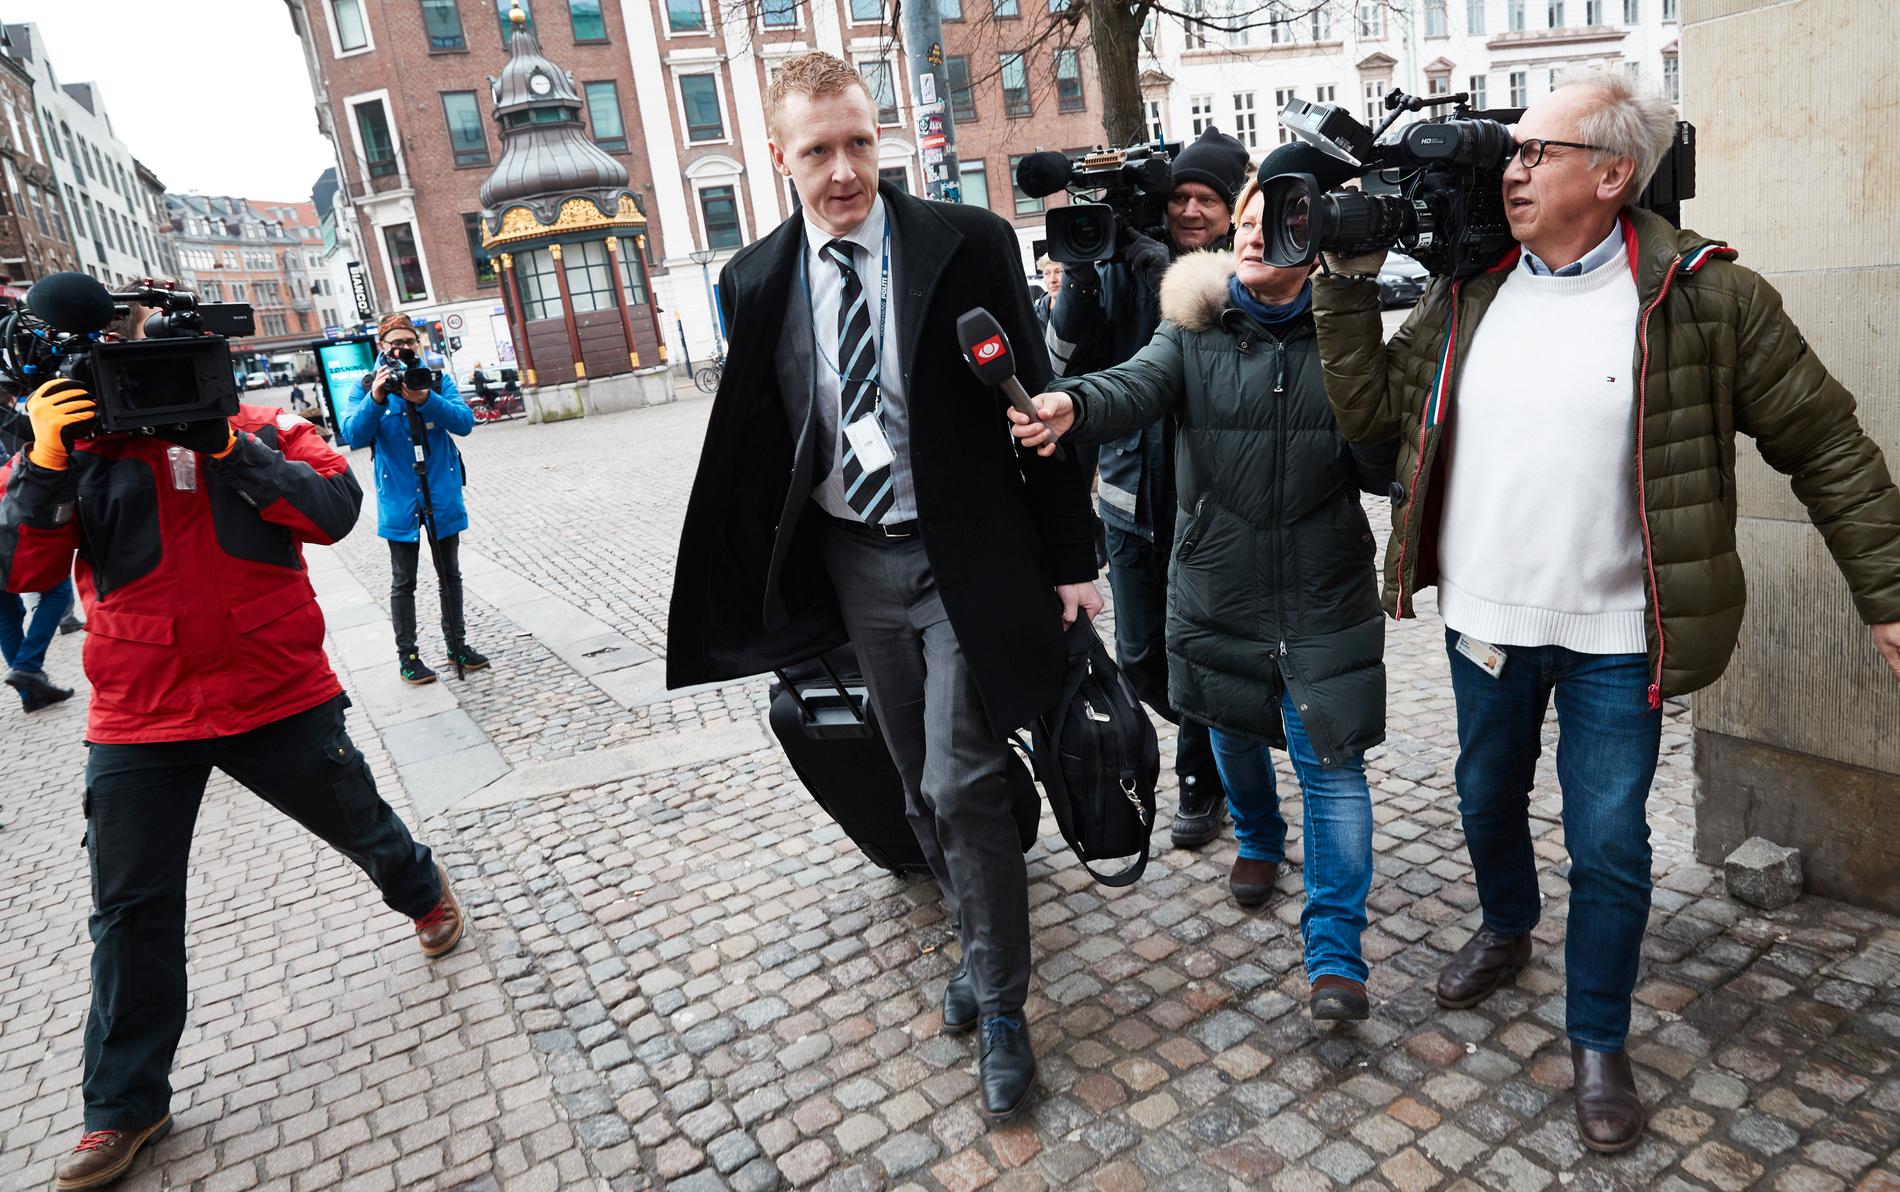 Åklagare Jacob Buch-Jepsen anländer till torsdagens rättegång mot Peter Madsen i Ubåtsfallet där han står åtalad för att ha mördat journalisten Kim Wall.